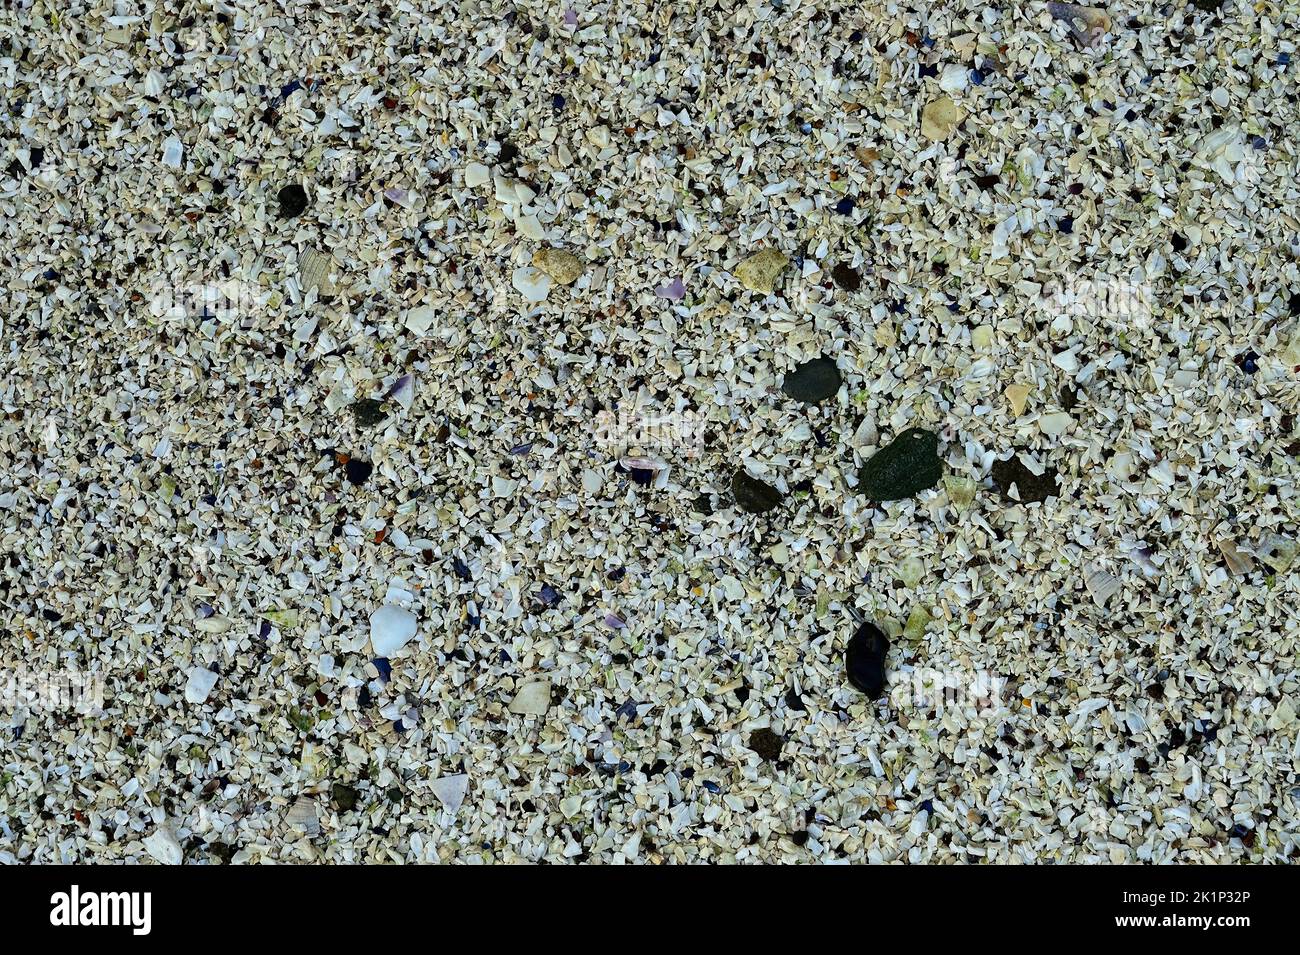 Coquillages mourés par la marée sur une plage rocheuse sur l'île de Vancouver Colombie-Britannique Canada. Banque D'Images